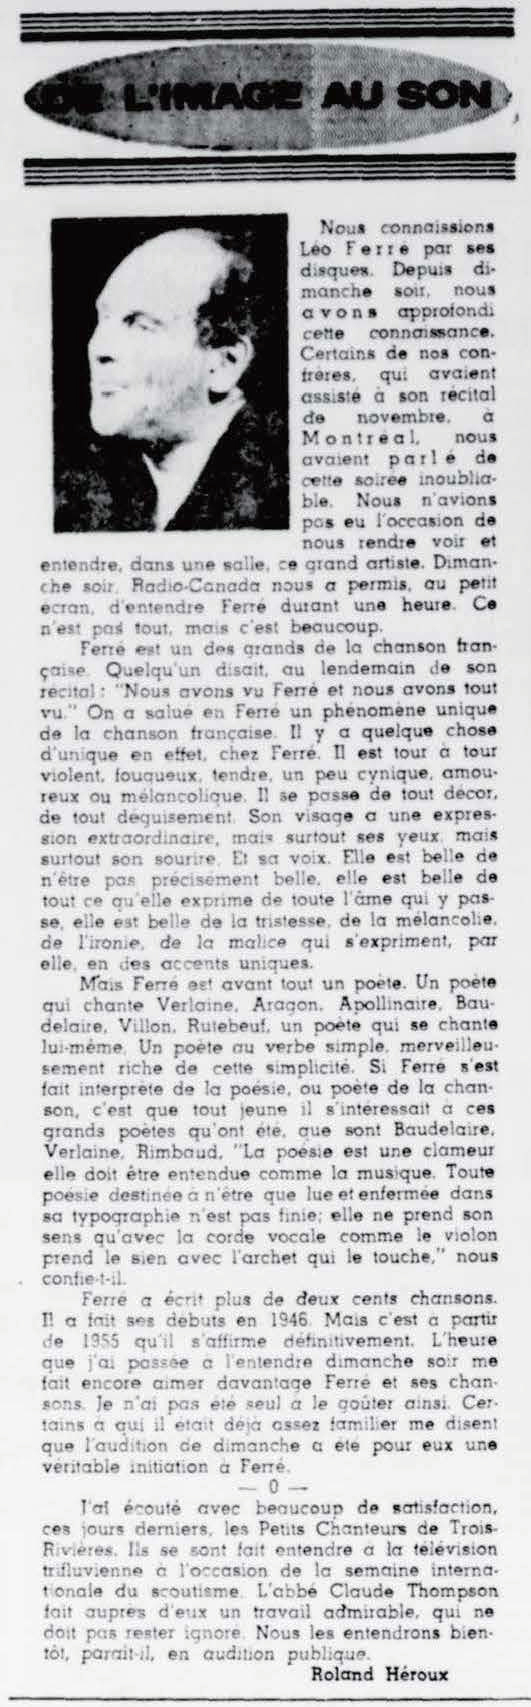 Léo Ferré - Le nouvelliste, 1920-, mardi 3 mars 1964